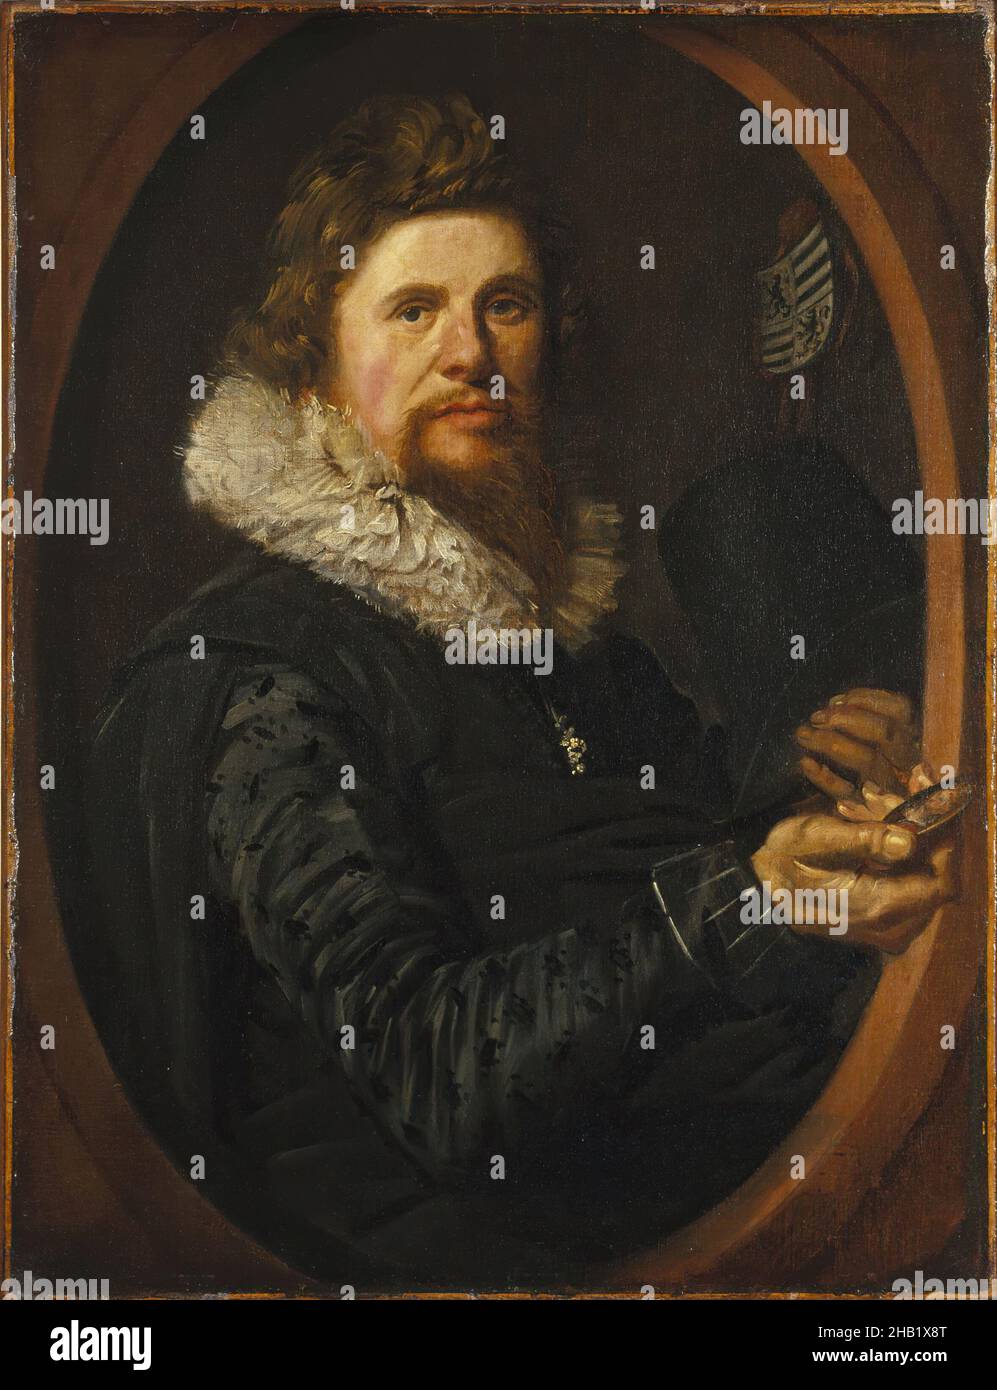 Portrait d'un homme, Frans Hals, Néerlandais, ca.1580-1666, huile sur toile, pays-Bas, env.1614-1615, 29 x 21 3/4 po, 73,7 x 55,2 cm, baroque, barbe, env.1614-1615, blason, néerlandais, peinture hollandaise, époque élisabéthaine,Frans Hals, Grim, homme, homme, moustache,Peinture à l'huile, Portrait, Portrait d'un homme, Ruff, rayons X. Banque D'Images